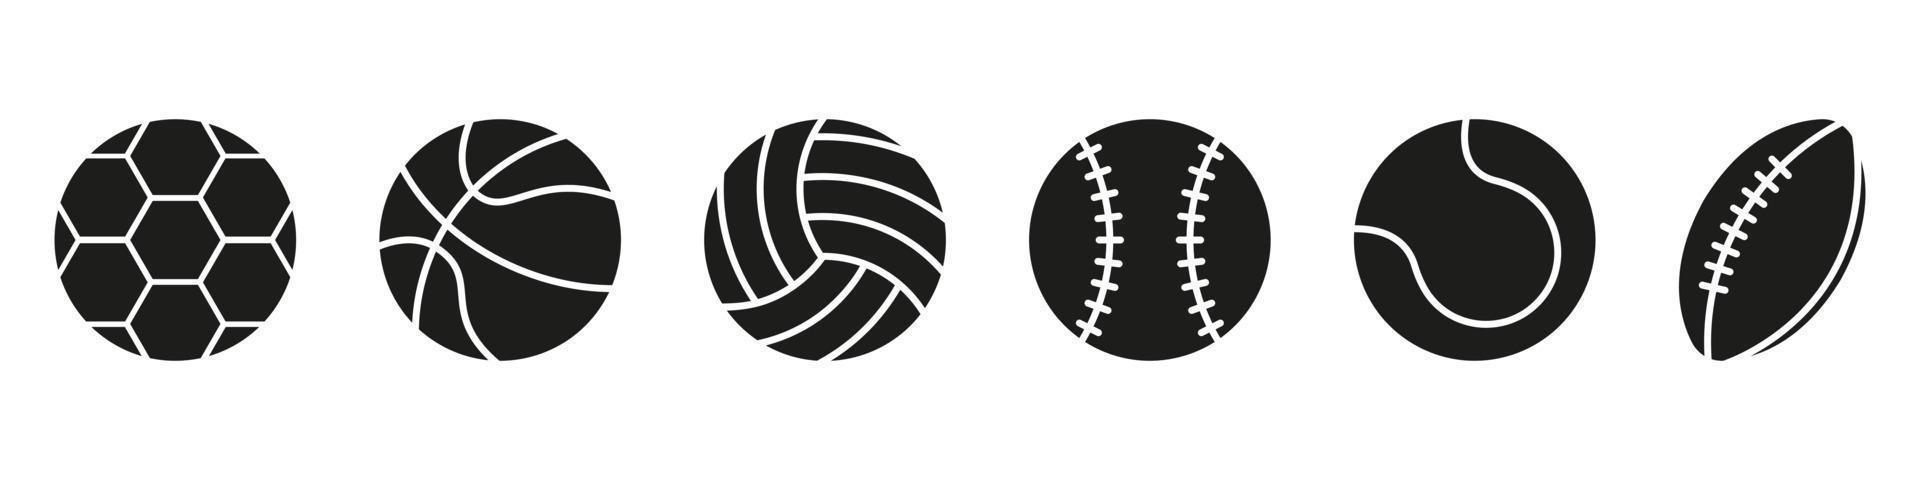 impostato di sport gioco palle silhouette icona. collezione di palle per pallacanestro, baseball, tennis, Rugby, calcio, pallavolo nero pittogramma. isolato vettore illustrazione.